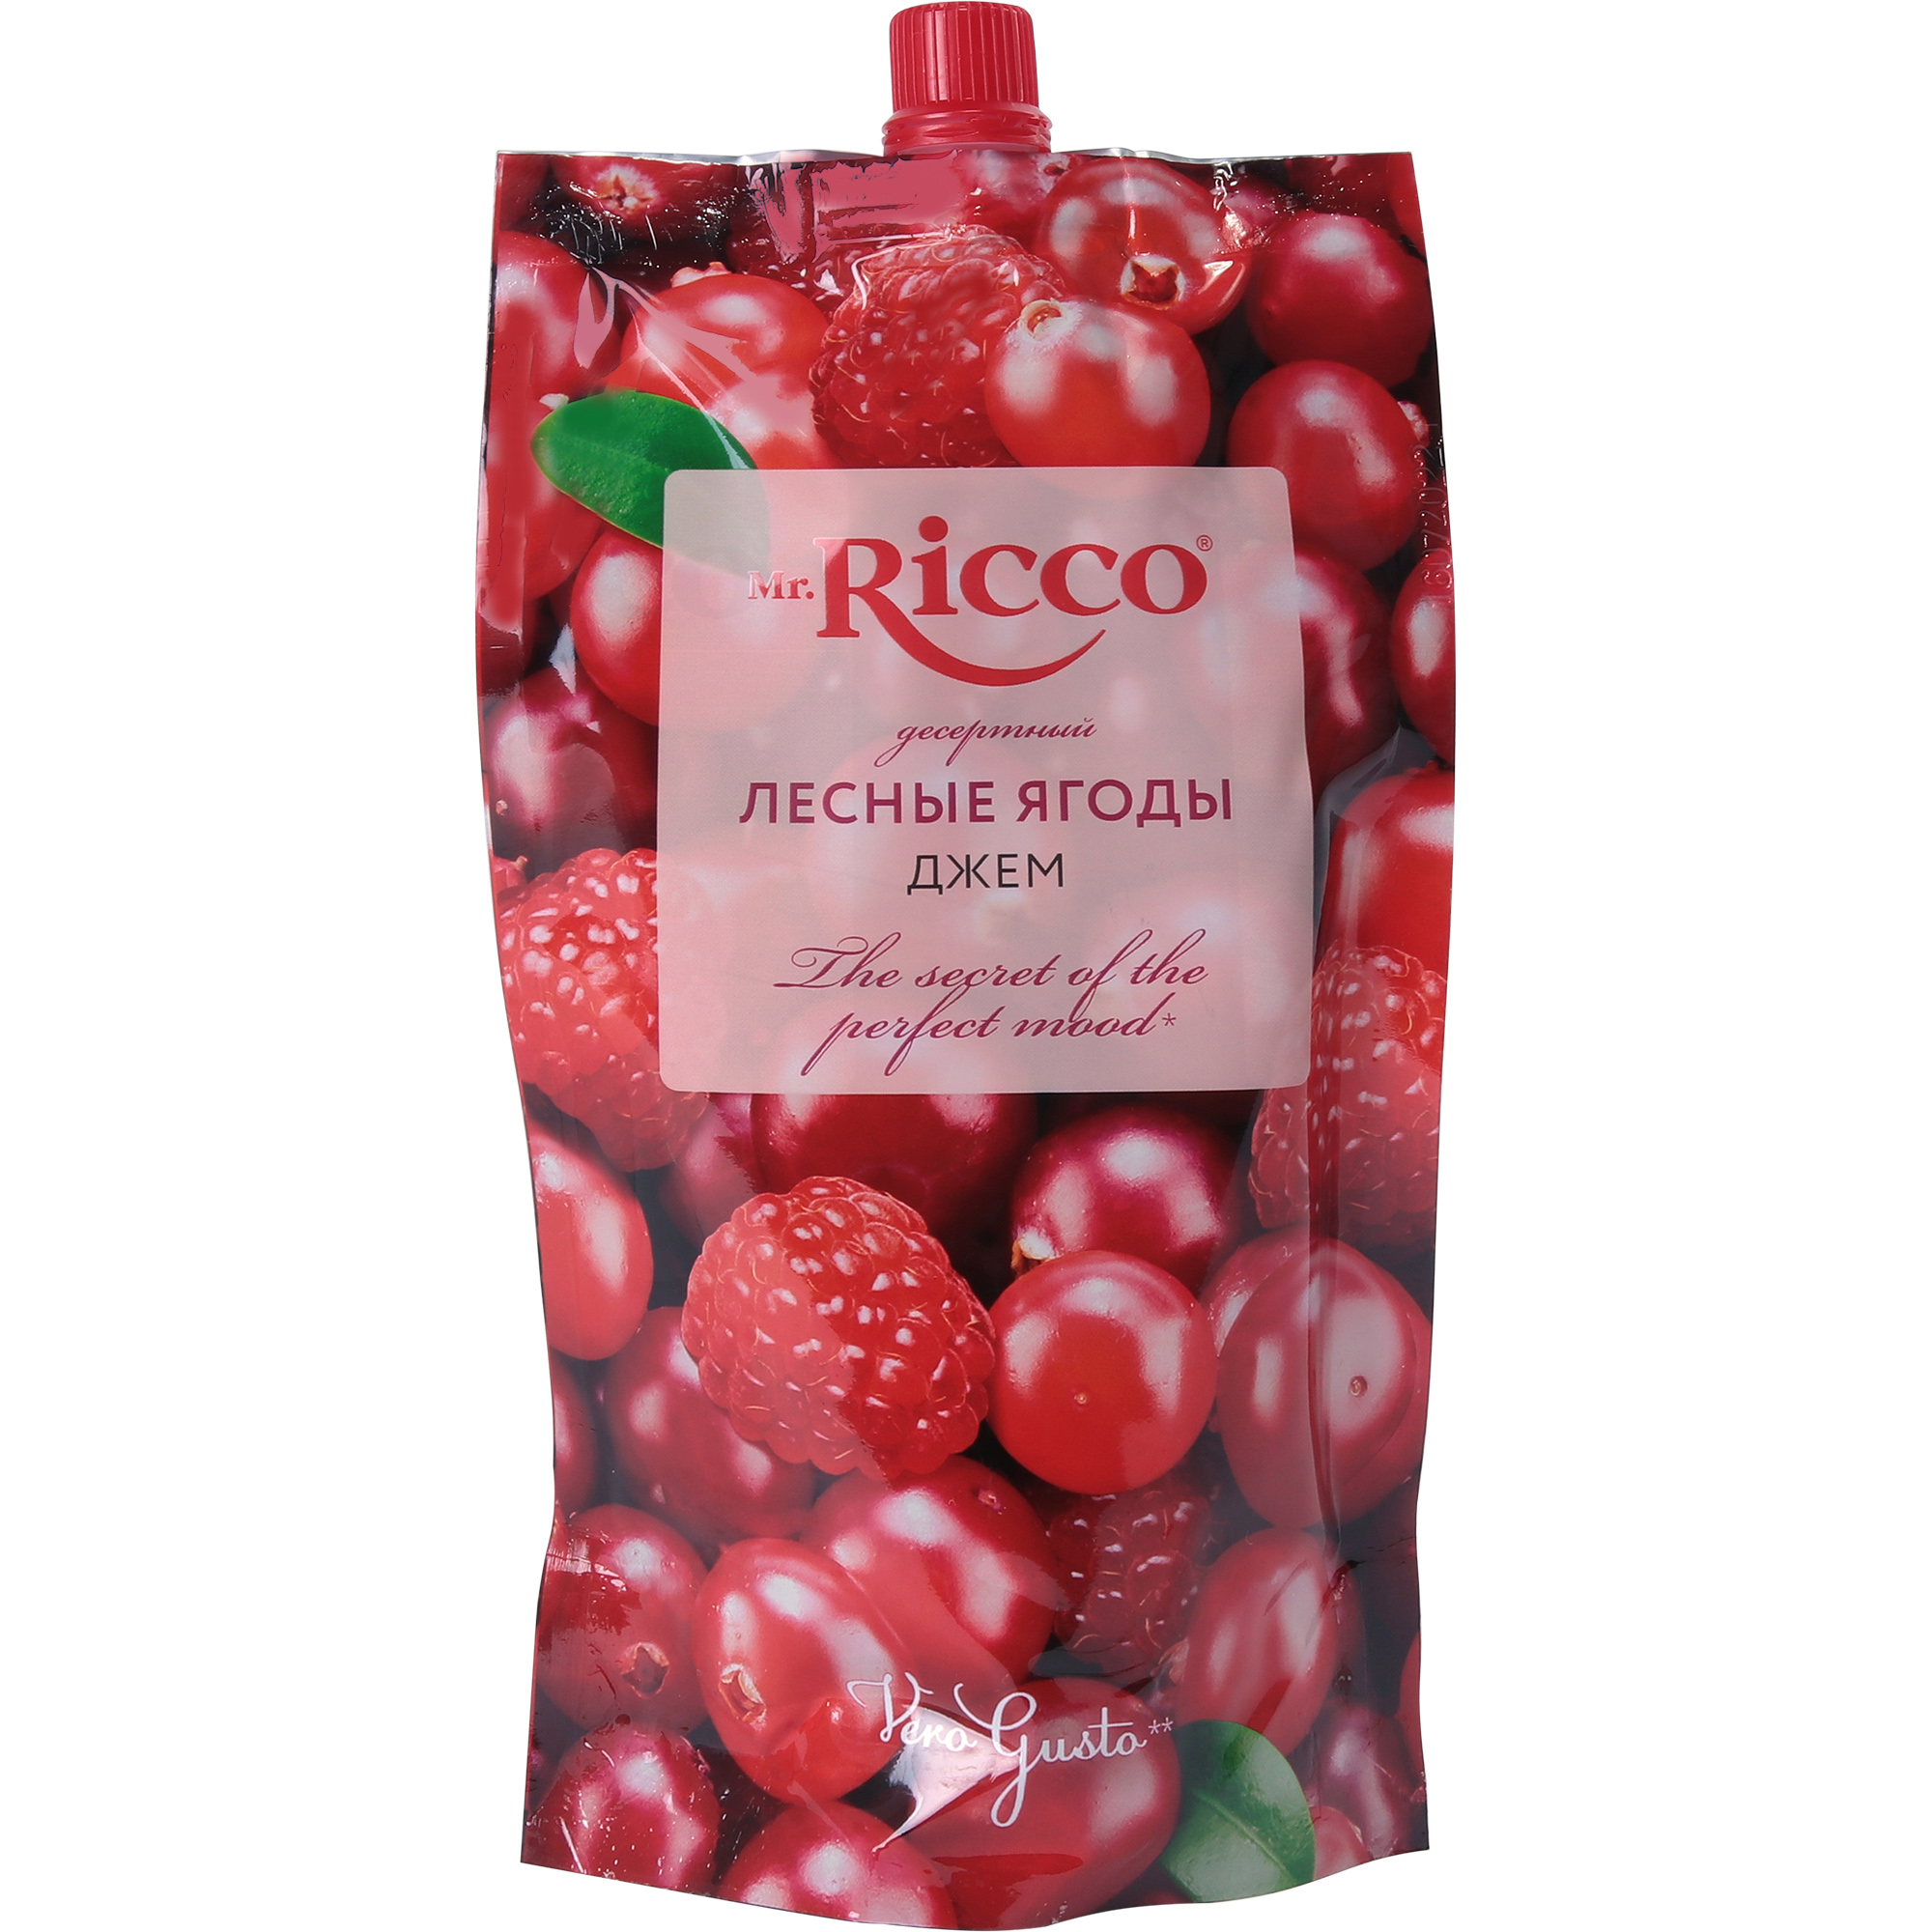 Джем Mr.Ricco лесные ягоды, 300 г джем msk null абрикос низкокалорийный без сахара с пребиотиком 260 г